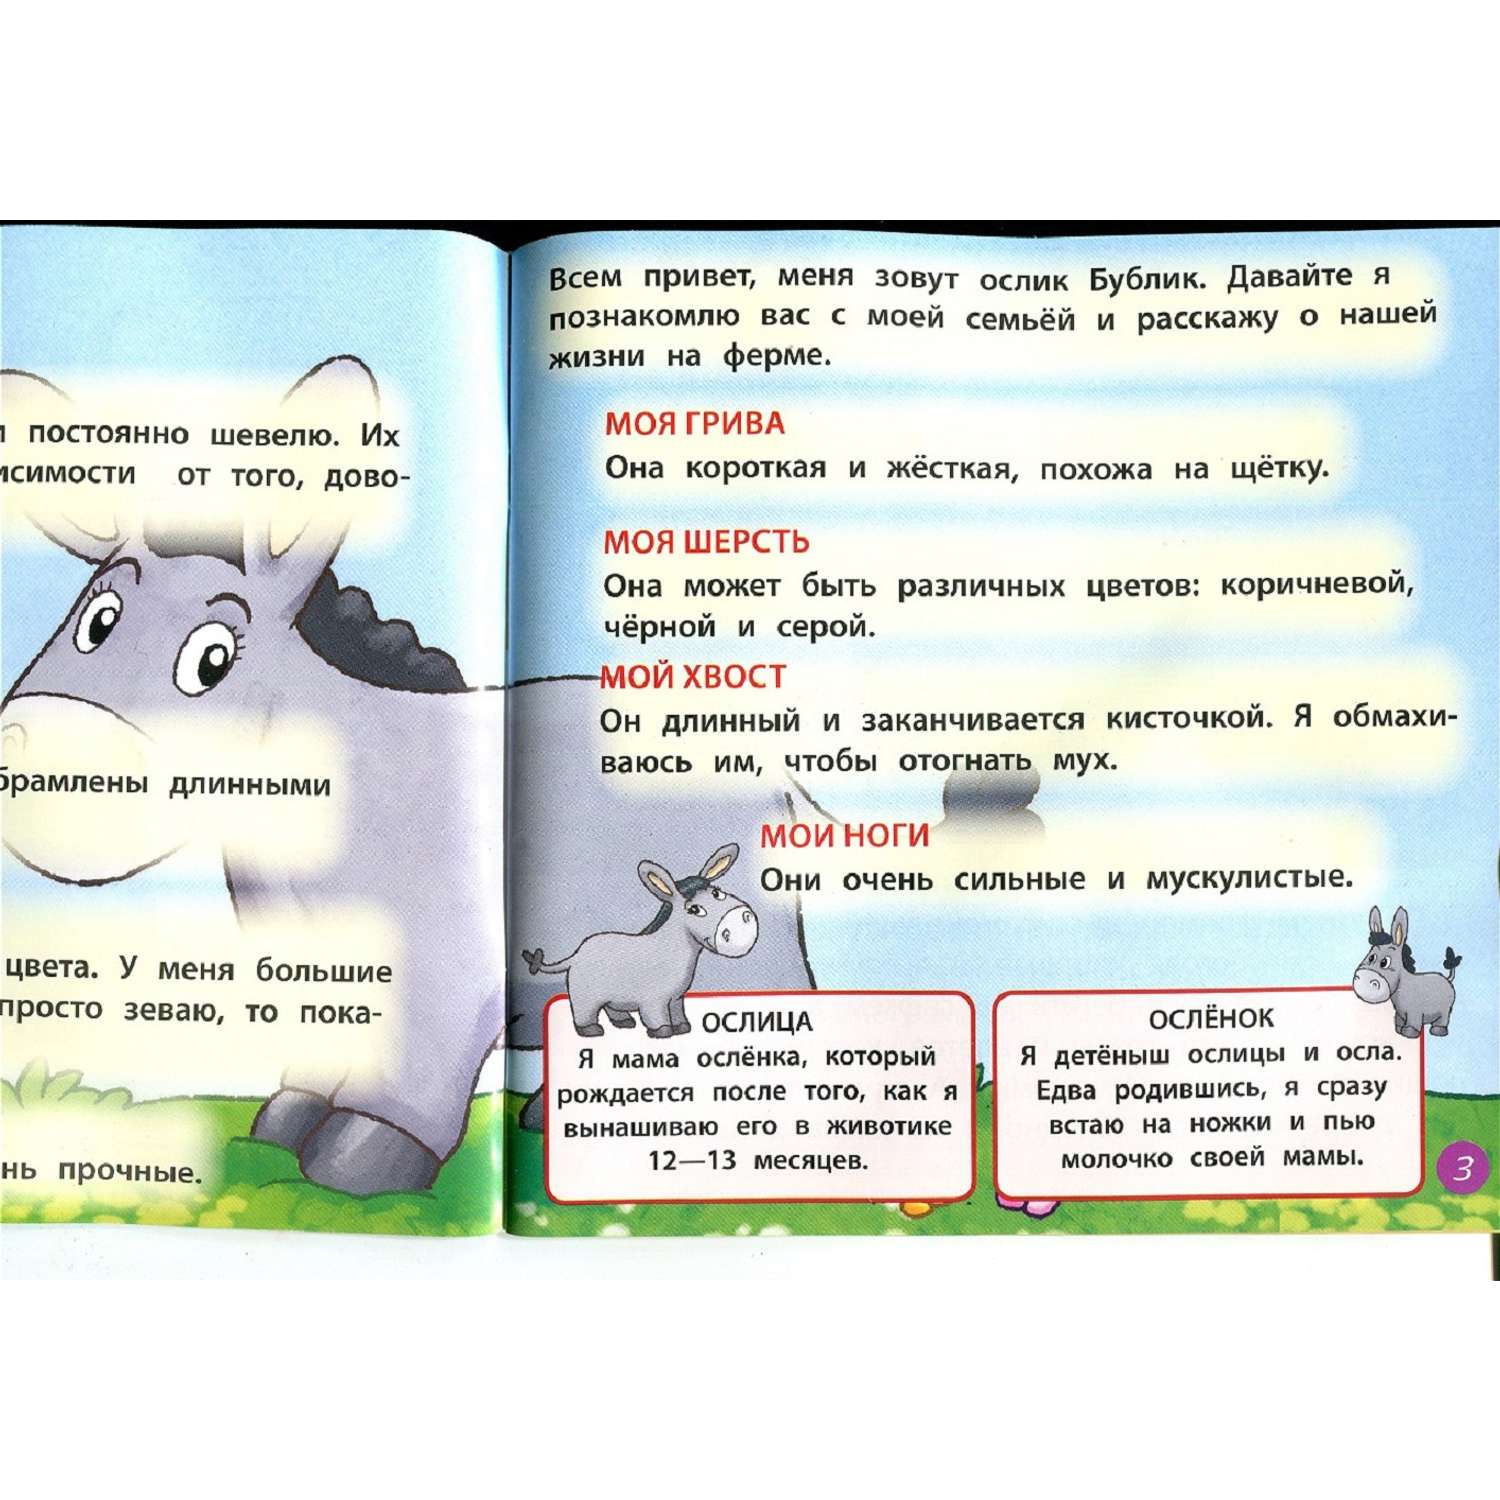 Журнал DeAgostini Комплект Ферма журнал 13+игрушки гнездо совы ослик конь лебедь плывет без тележки овца - фото 3